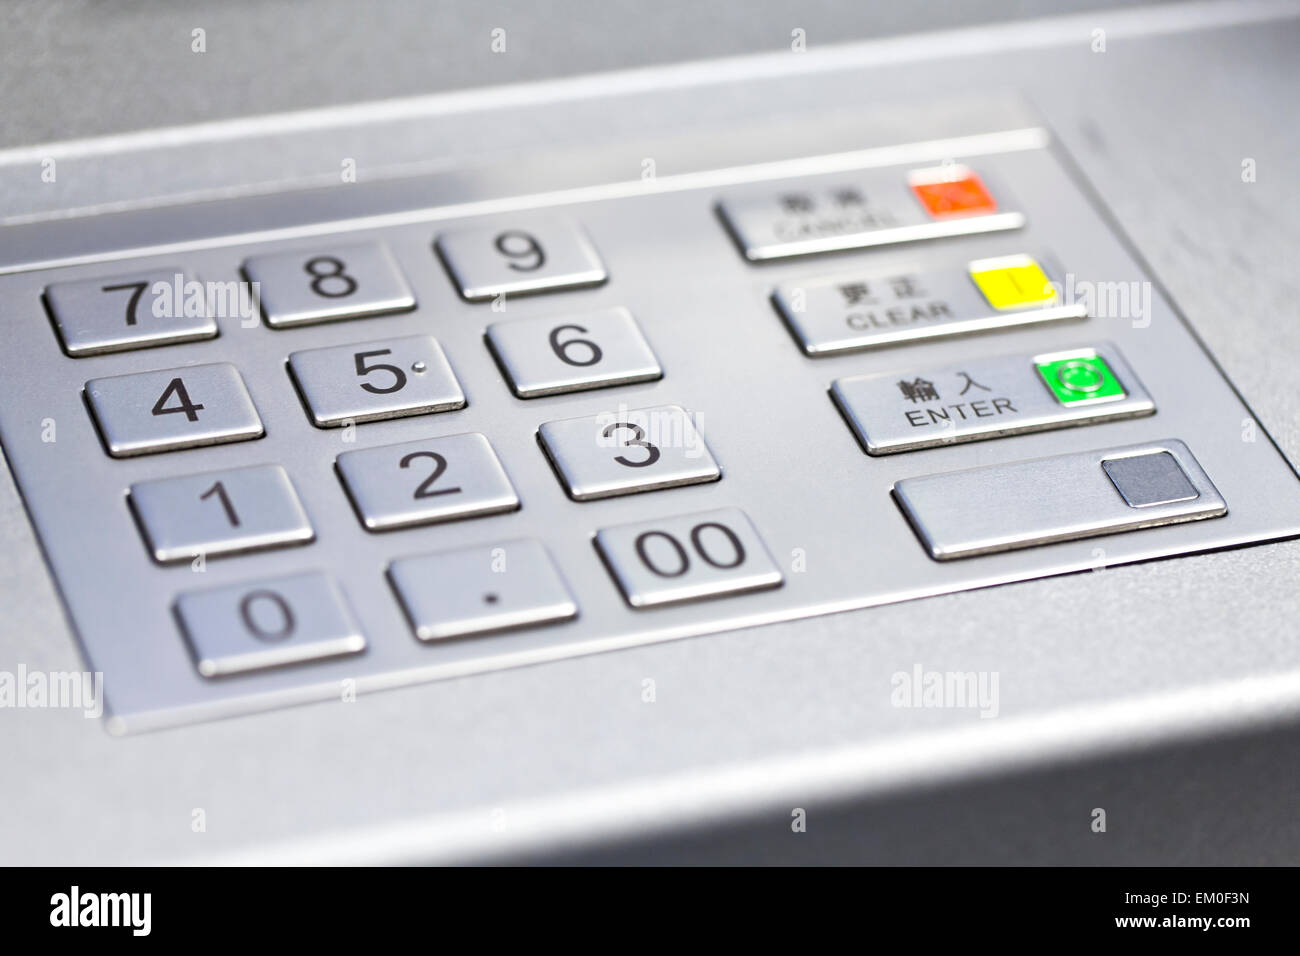 Pin code of ATM machine Stock Photo